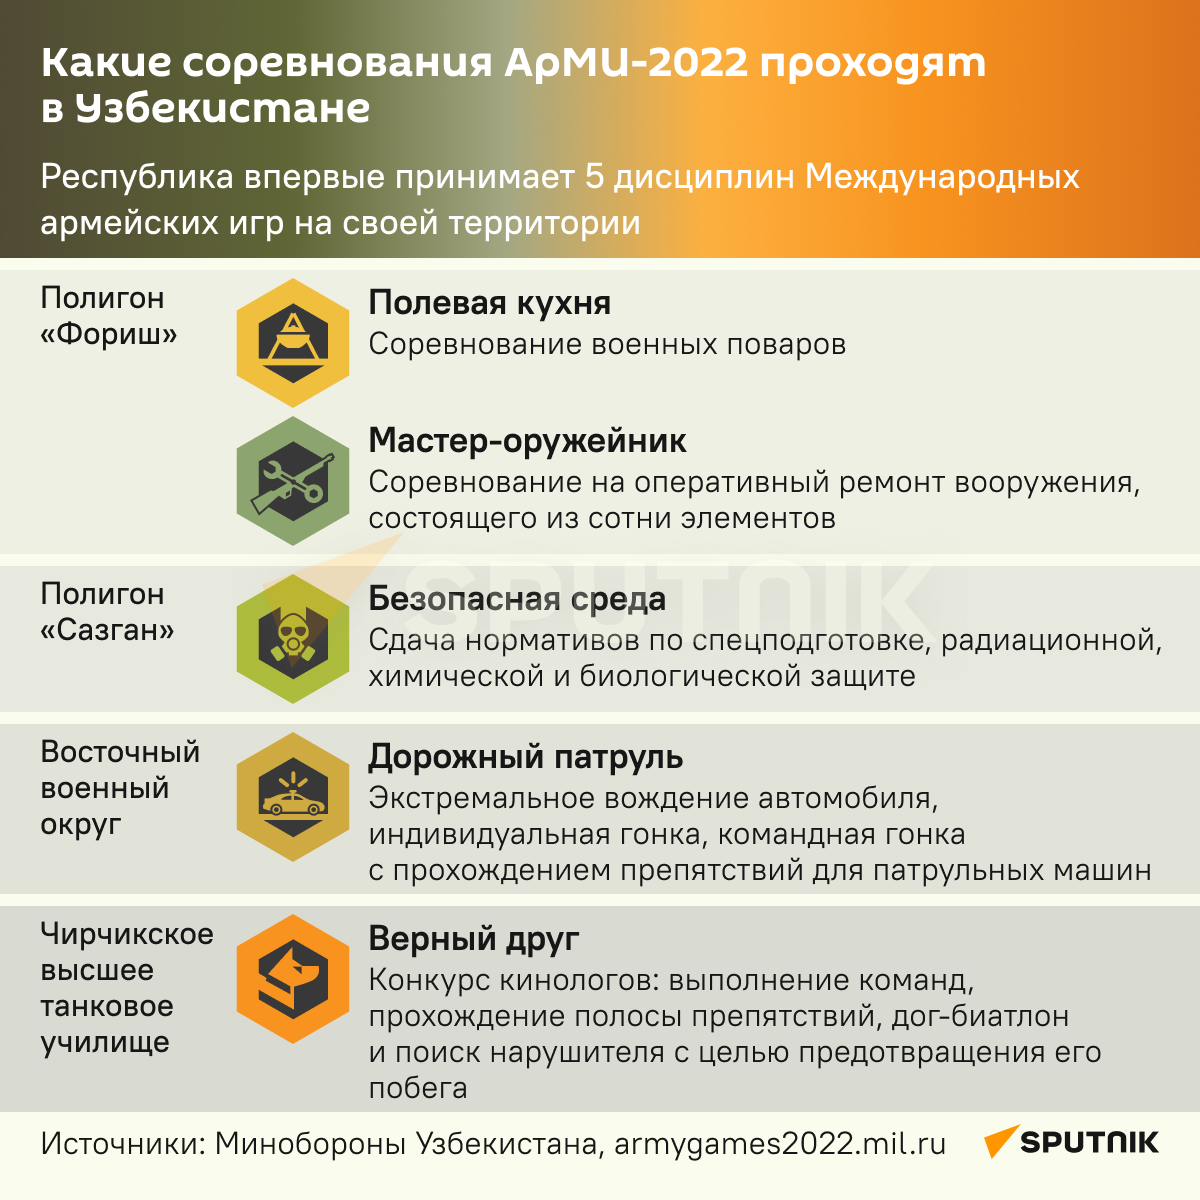 АрМИ-2022 в Узбекистане - Sputnik Узбекистан